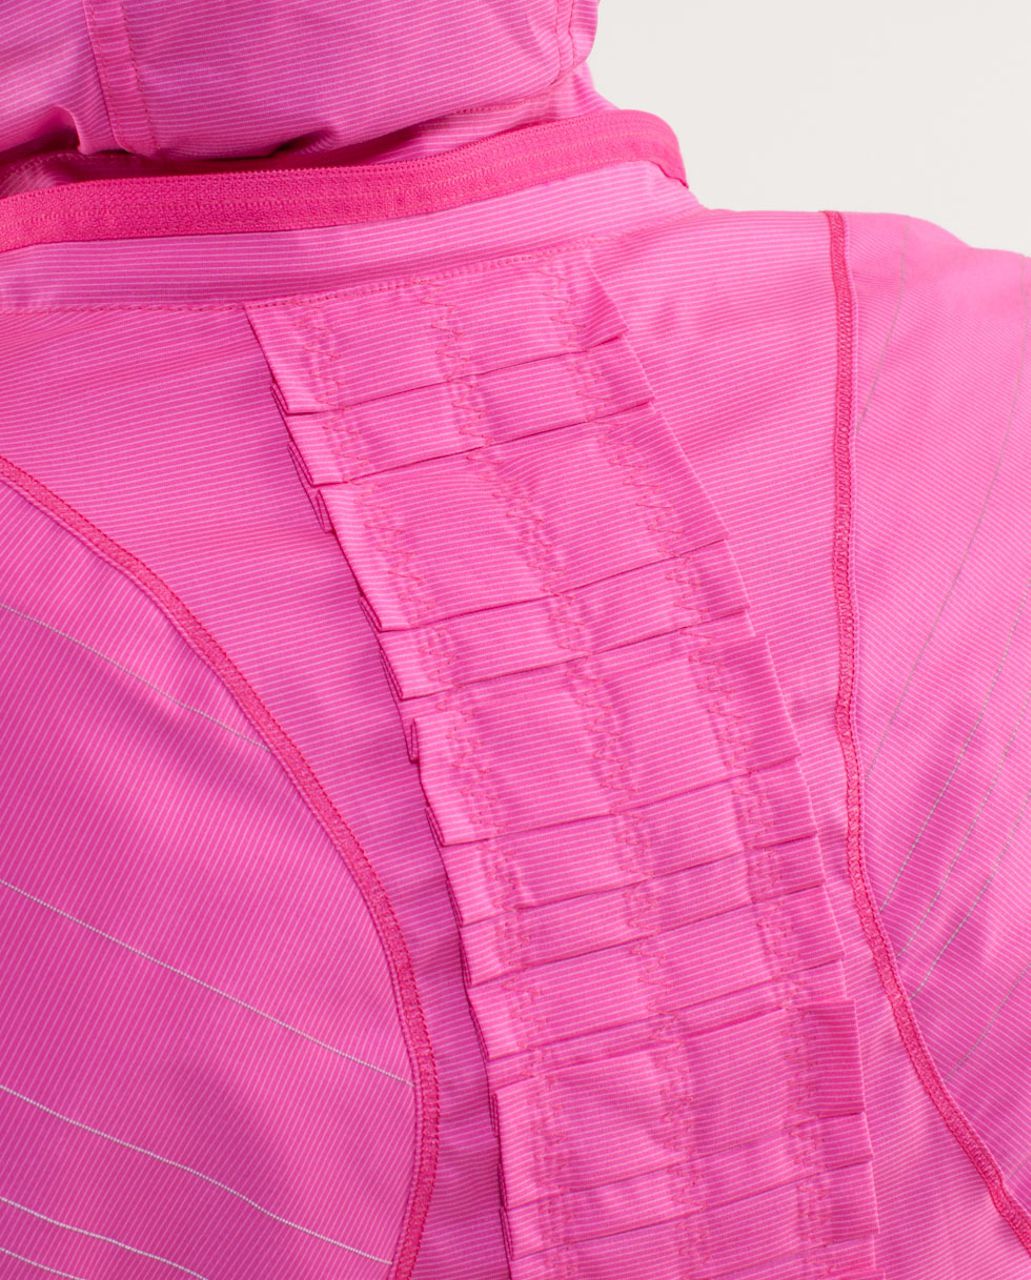 Lululemon Run:  Hustle Jacket - White Paris Pink Microstripe